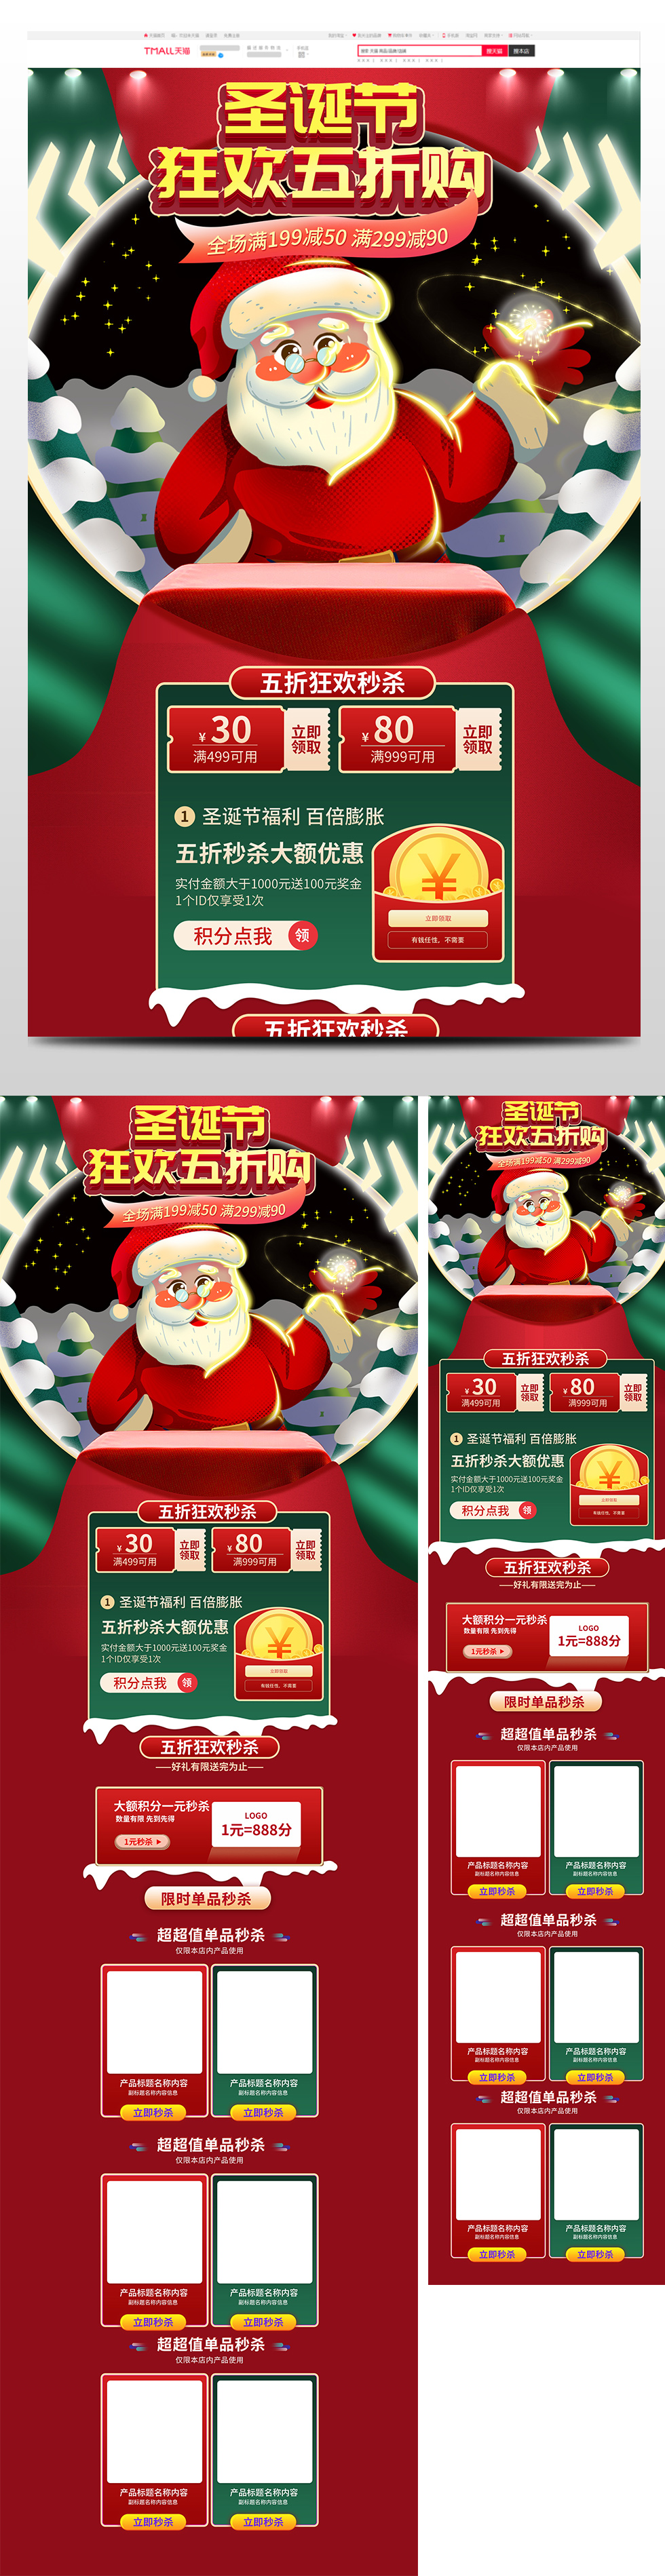 喜庆双旦礼遇季圣诞节元旦节促销天猫首页电商圣诞节首页 57.JPG